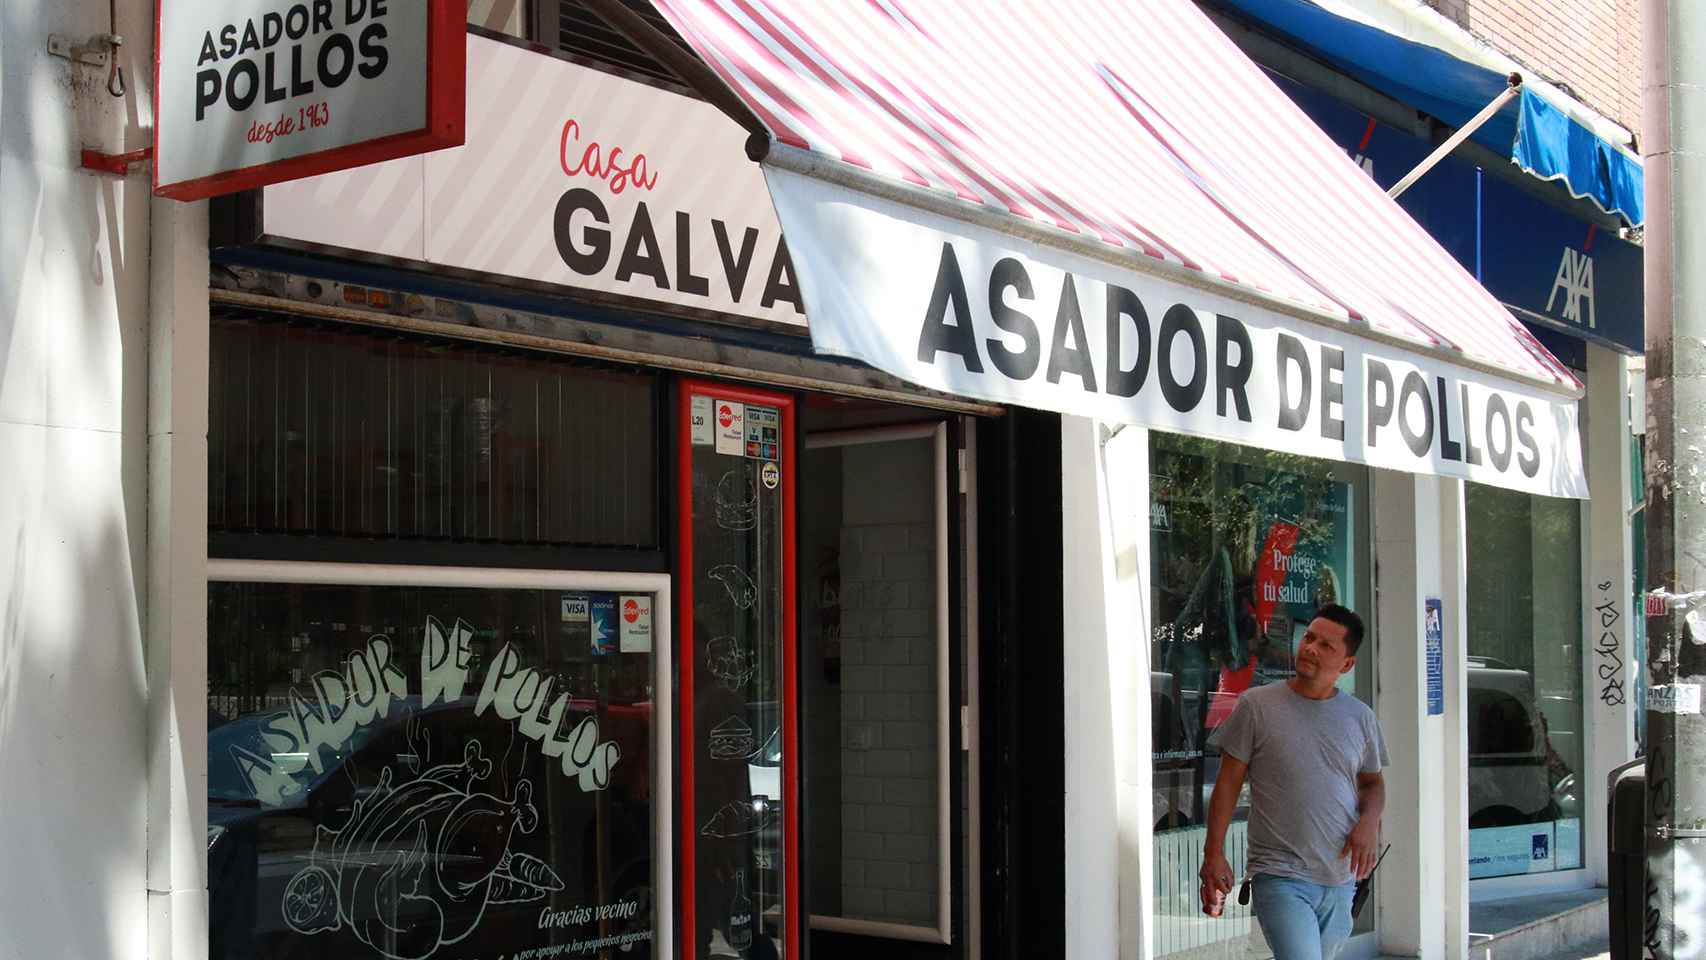 La andadura de los asadores de pollo Casa Galván comenzó en 1963.